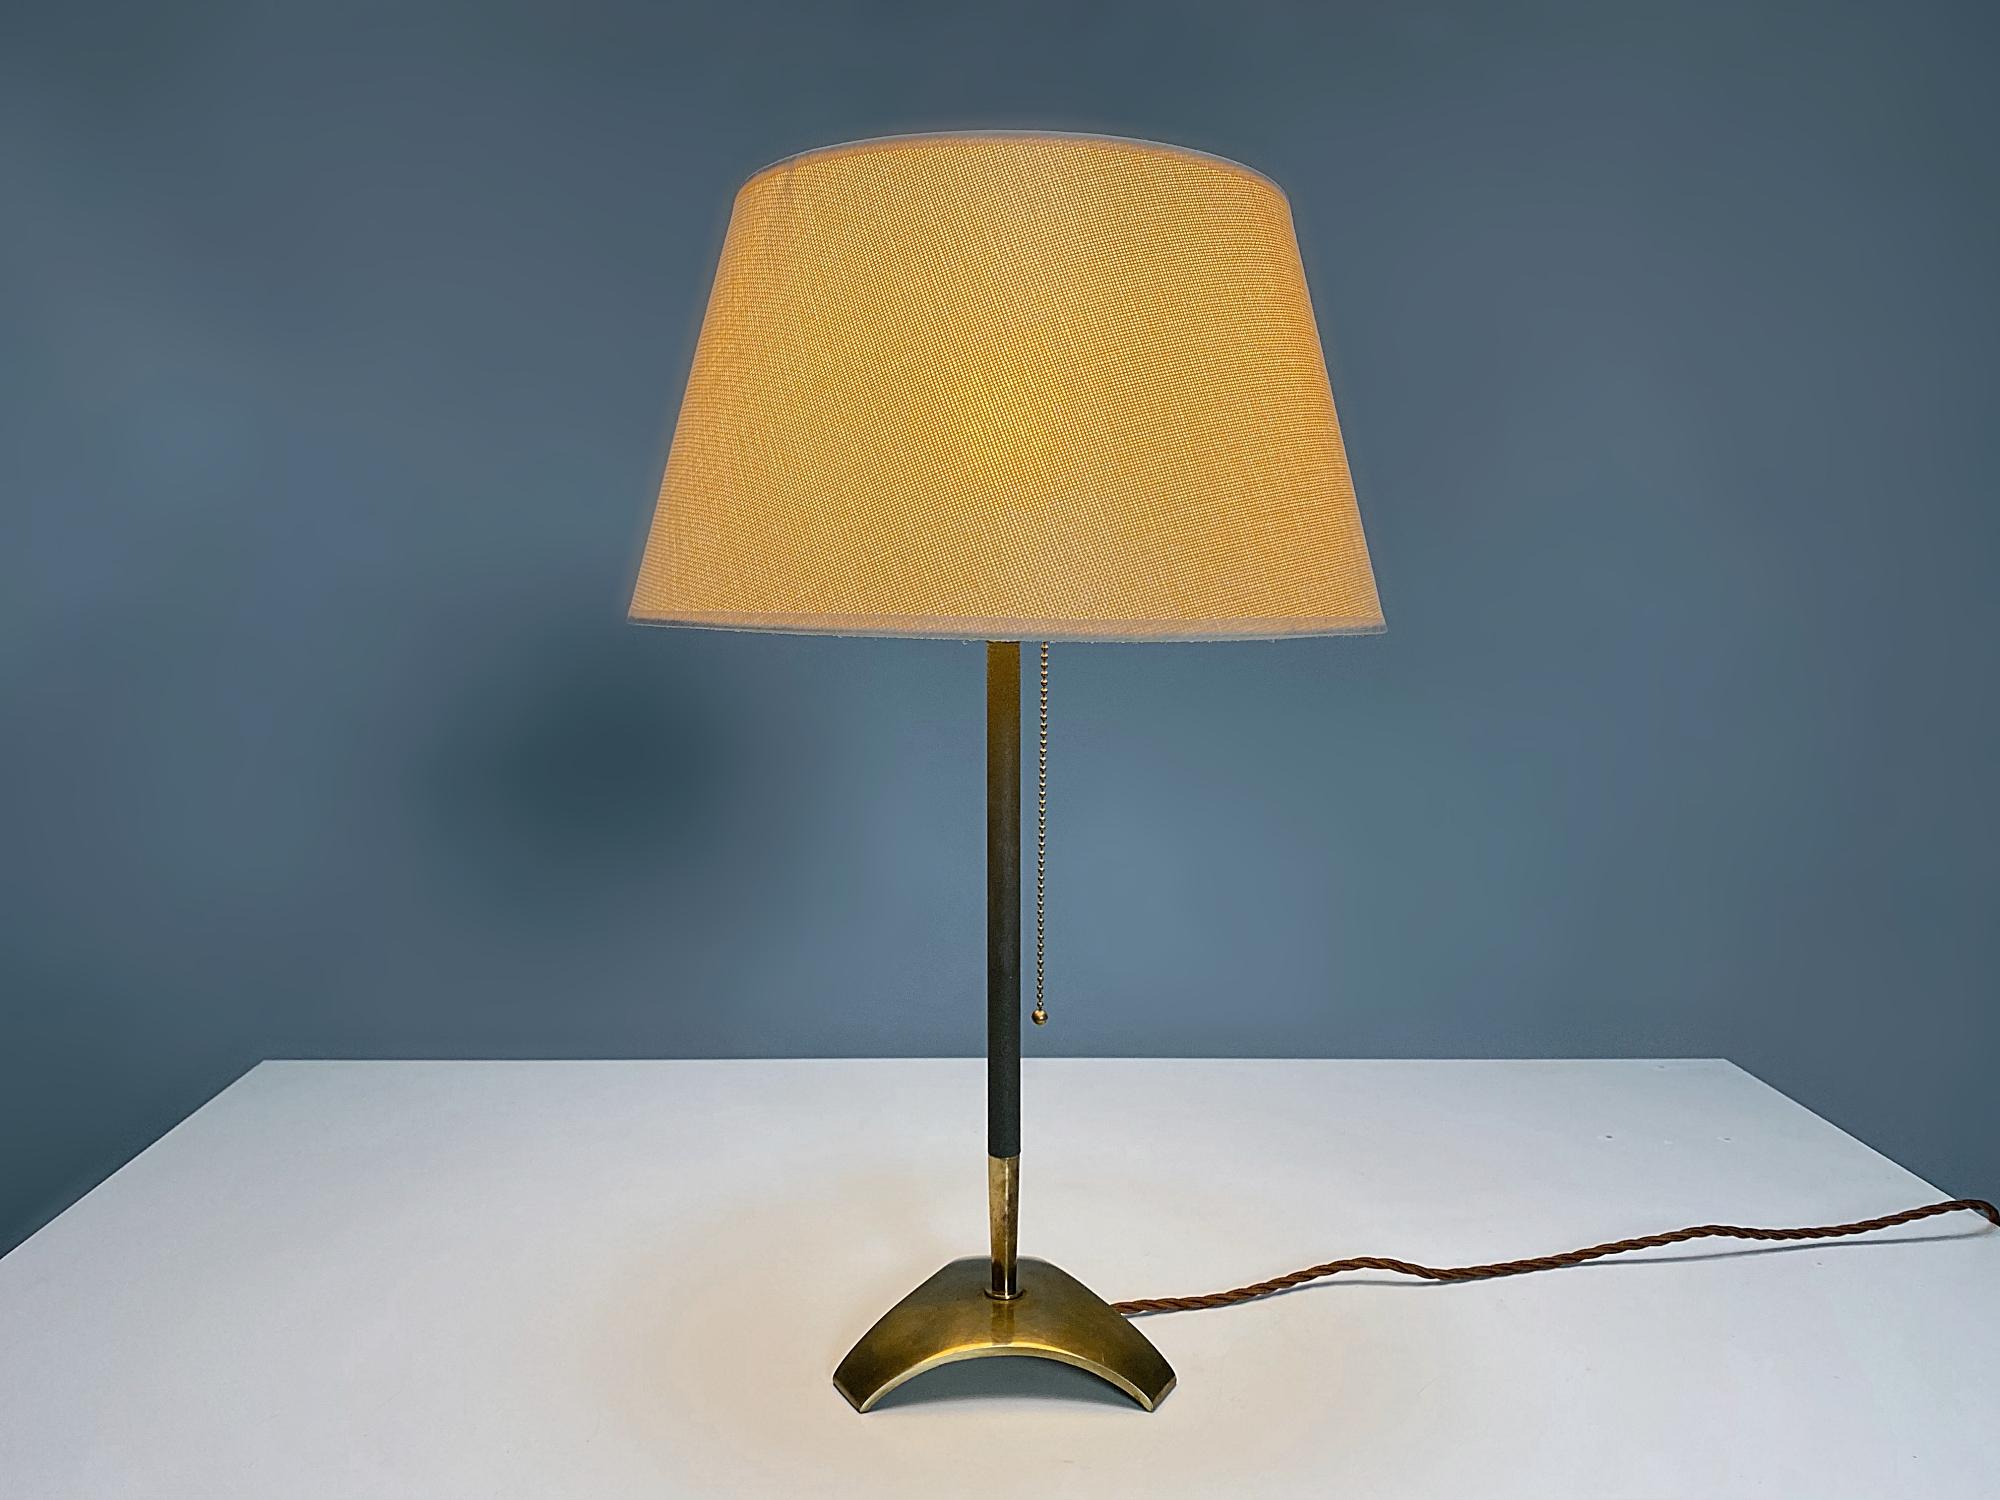 Belle lampe de table Hagenauer Werkstätten en laiton fabriquée dans les années 1960, Autriche. La lampe est fabriquée en laiton poli avec une tige laquée en gris foncé. La lampe fournit une lumière douce et merveilleuse. La lampe est en très bon